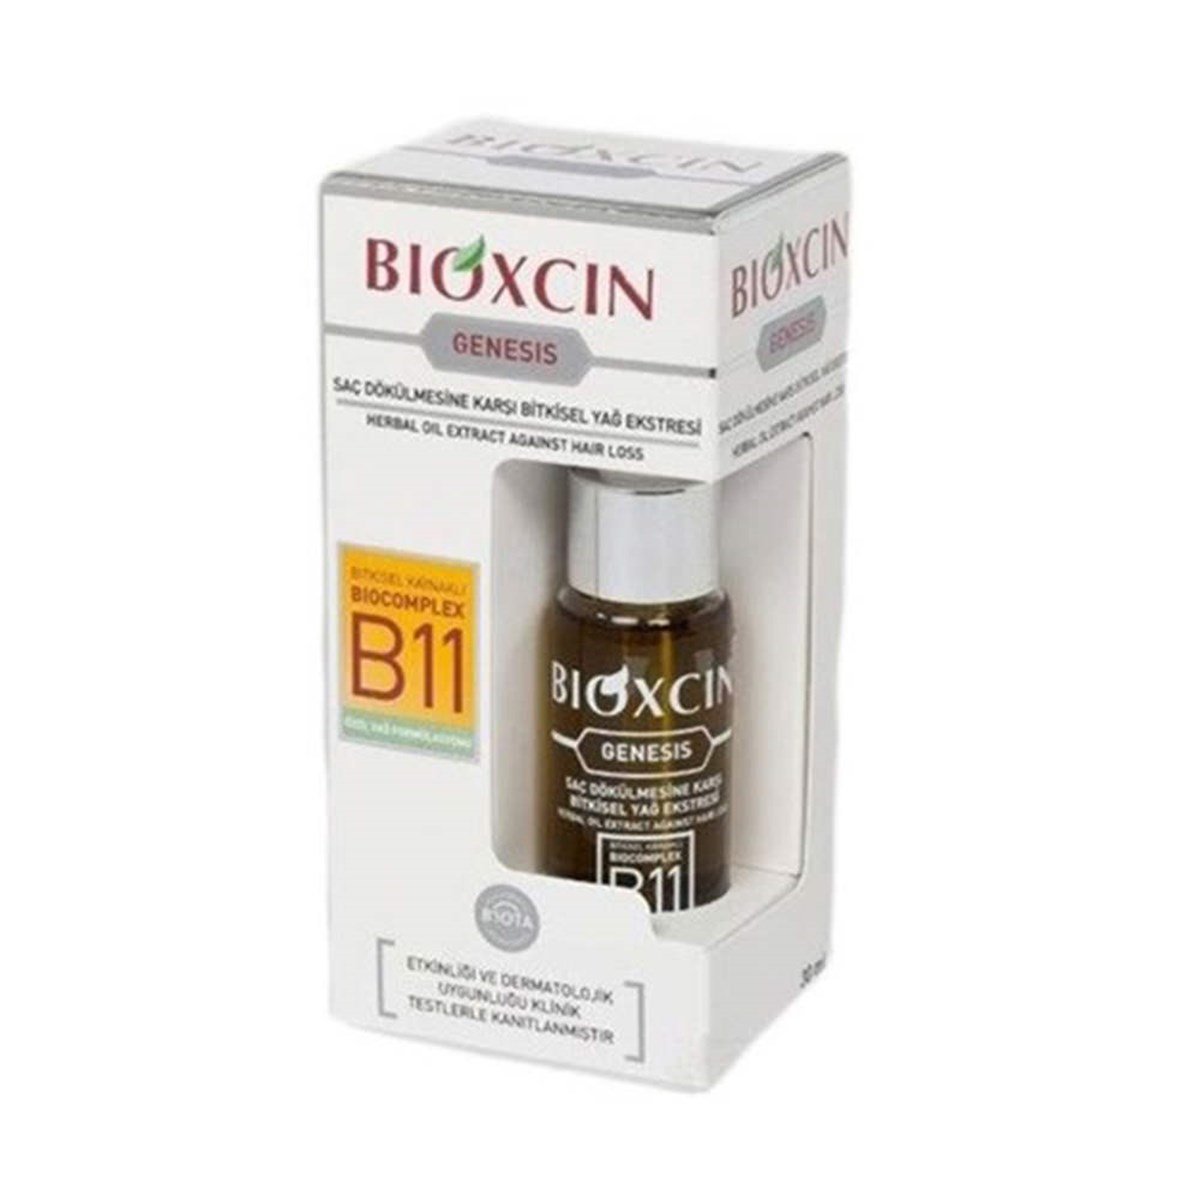 Bioxcin Genesis Bitkisel Yağ Ekstresi 30 ml